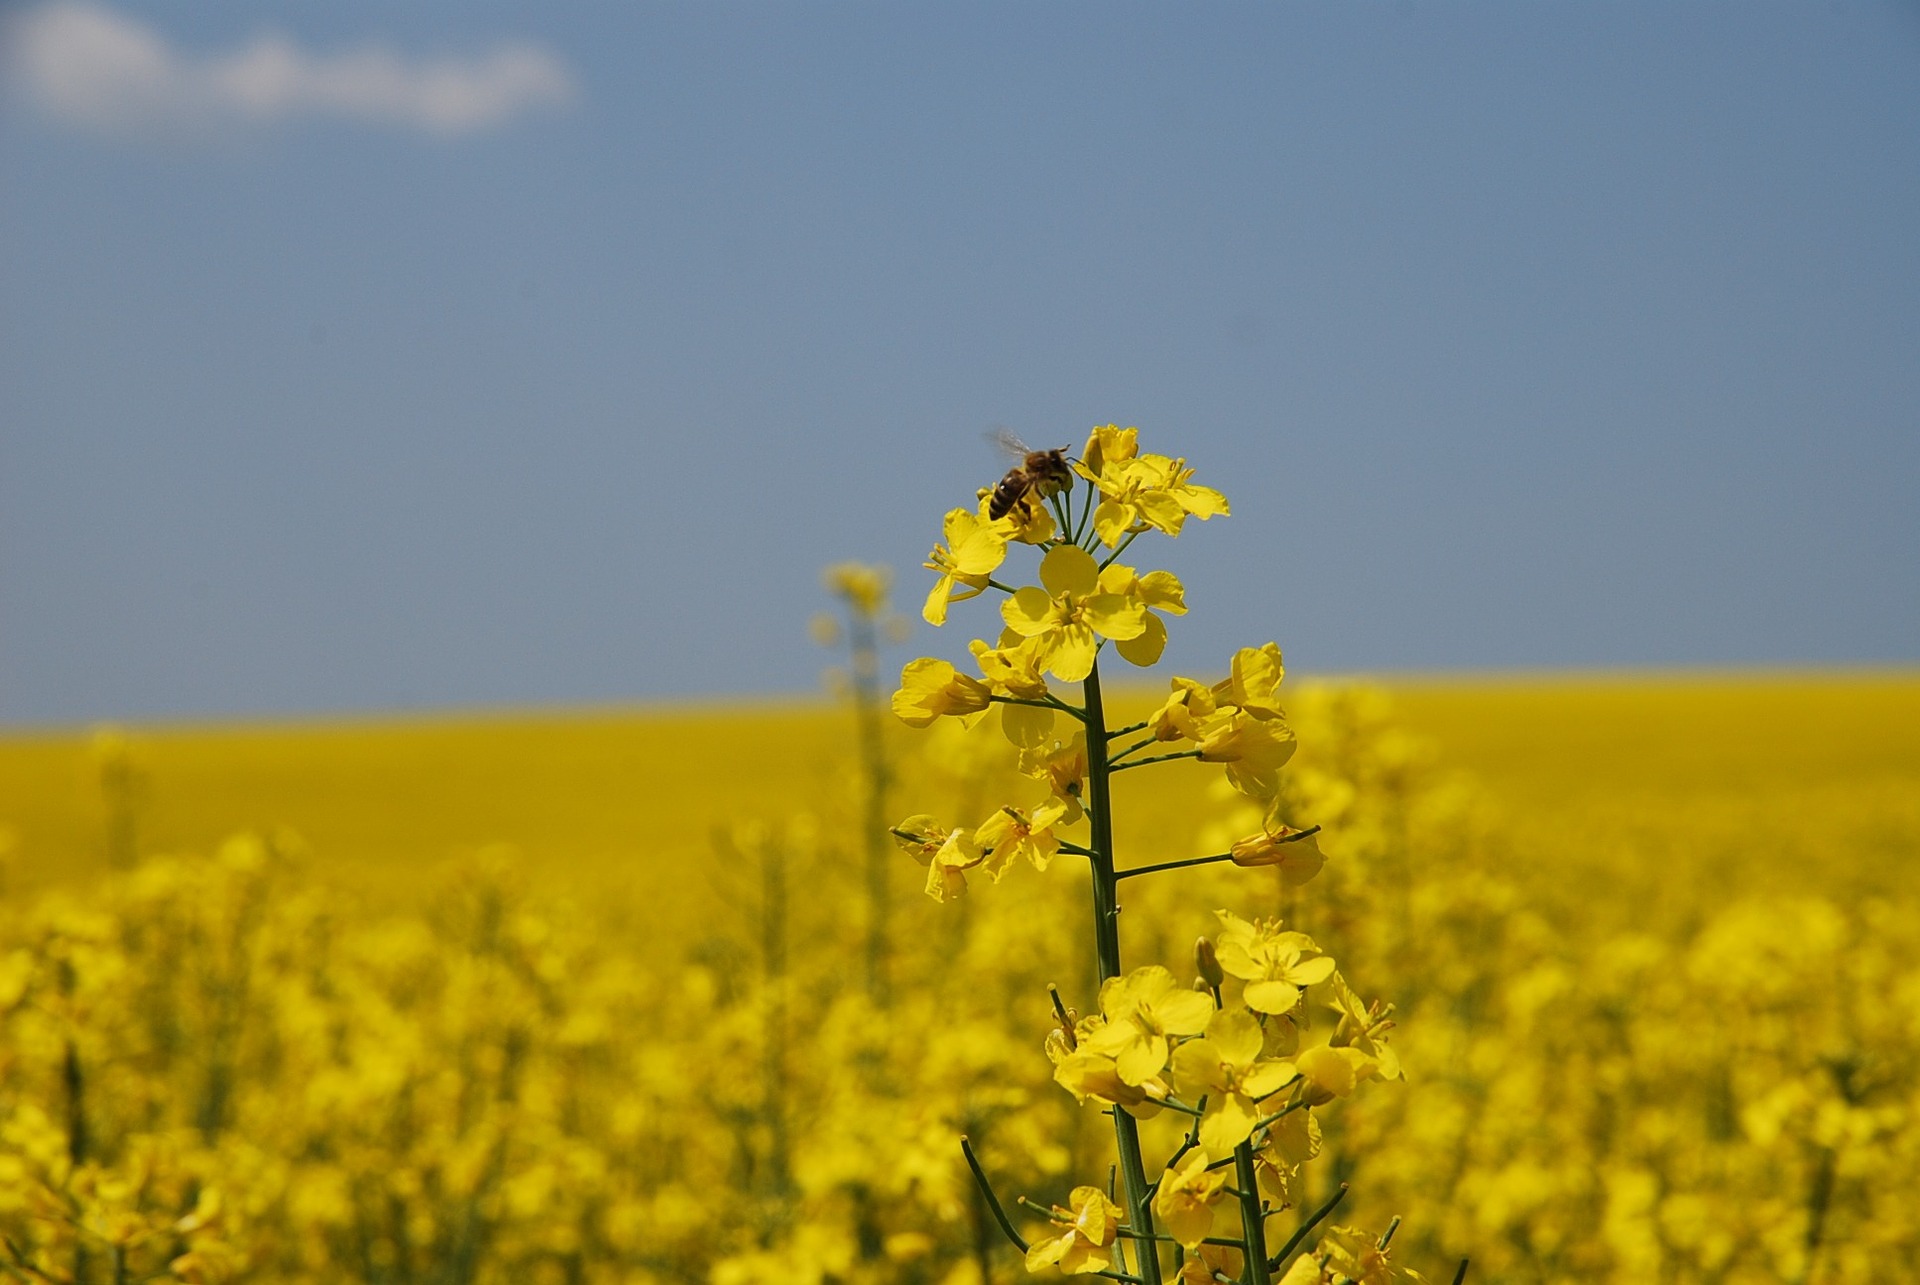 Fin du buzz : Arbitrage responsable de Matignon sur les néonicotinoïdes | France Nature Environnement